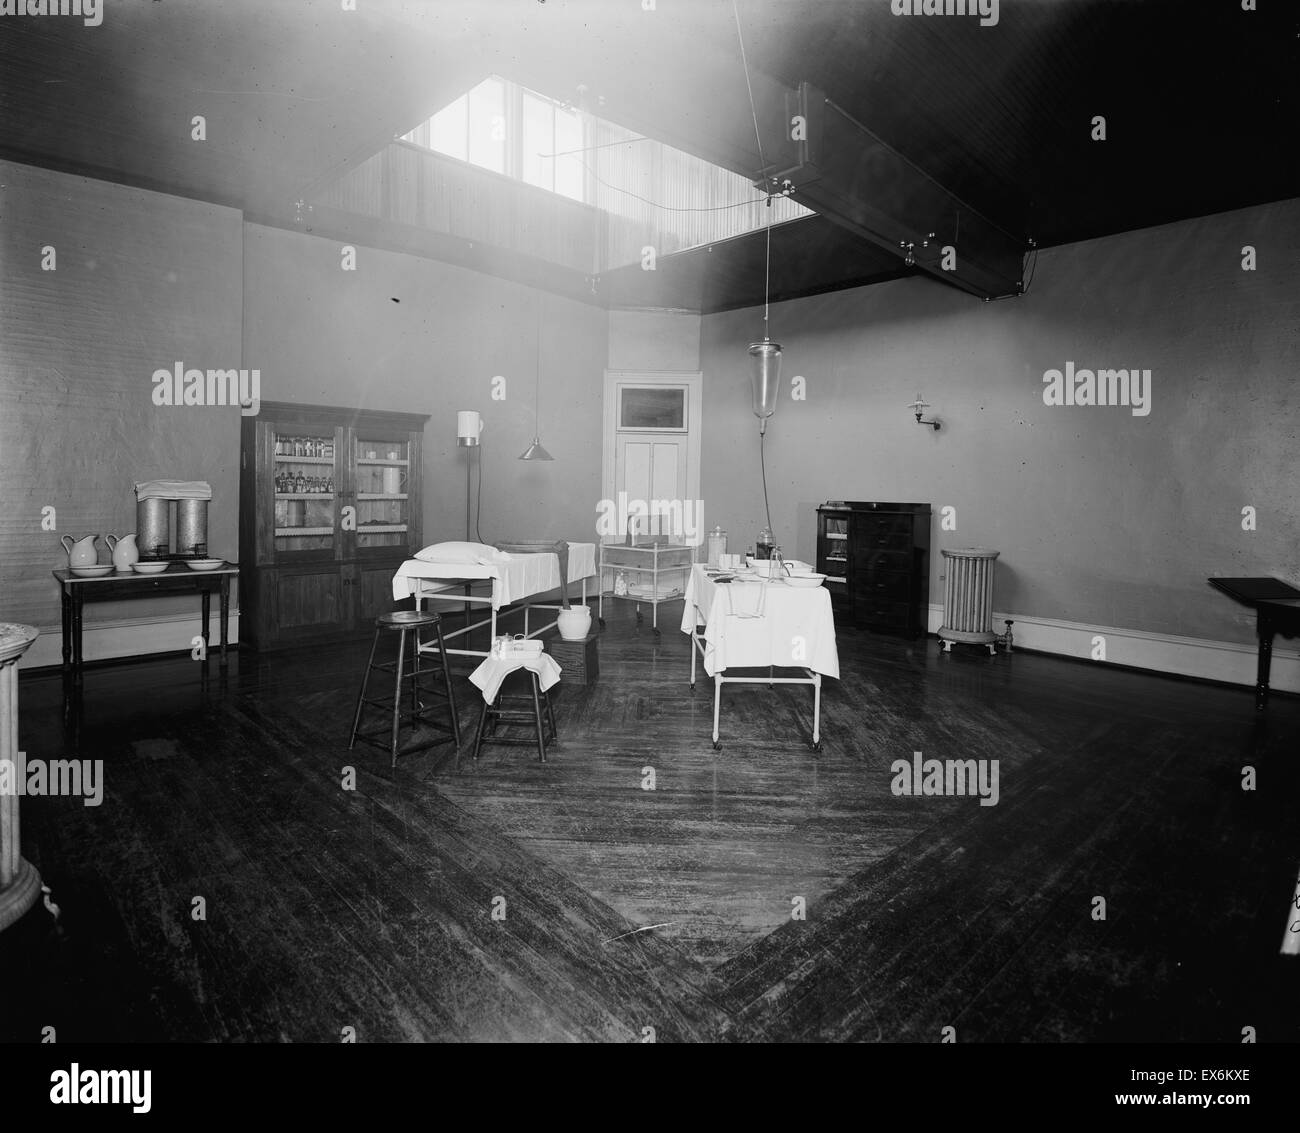 Zimmer mit Schrank, Waschbecken, und Massage oder Behandlung Tisch Medizin, wahrscheinlich das Badehaus Ypsilanti Mine, Ypsilant, Michigan, USA 1910 Stockfoto